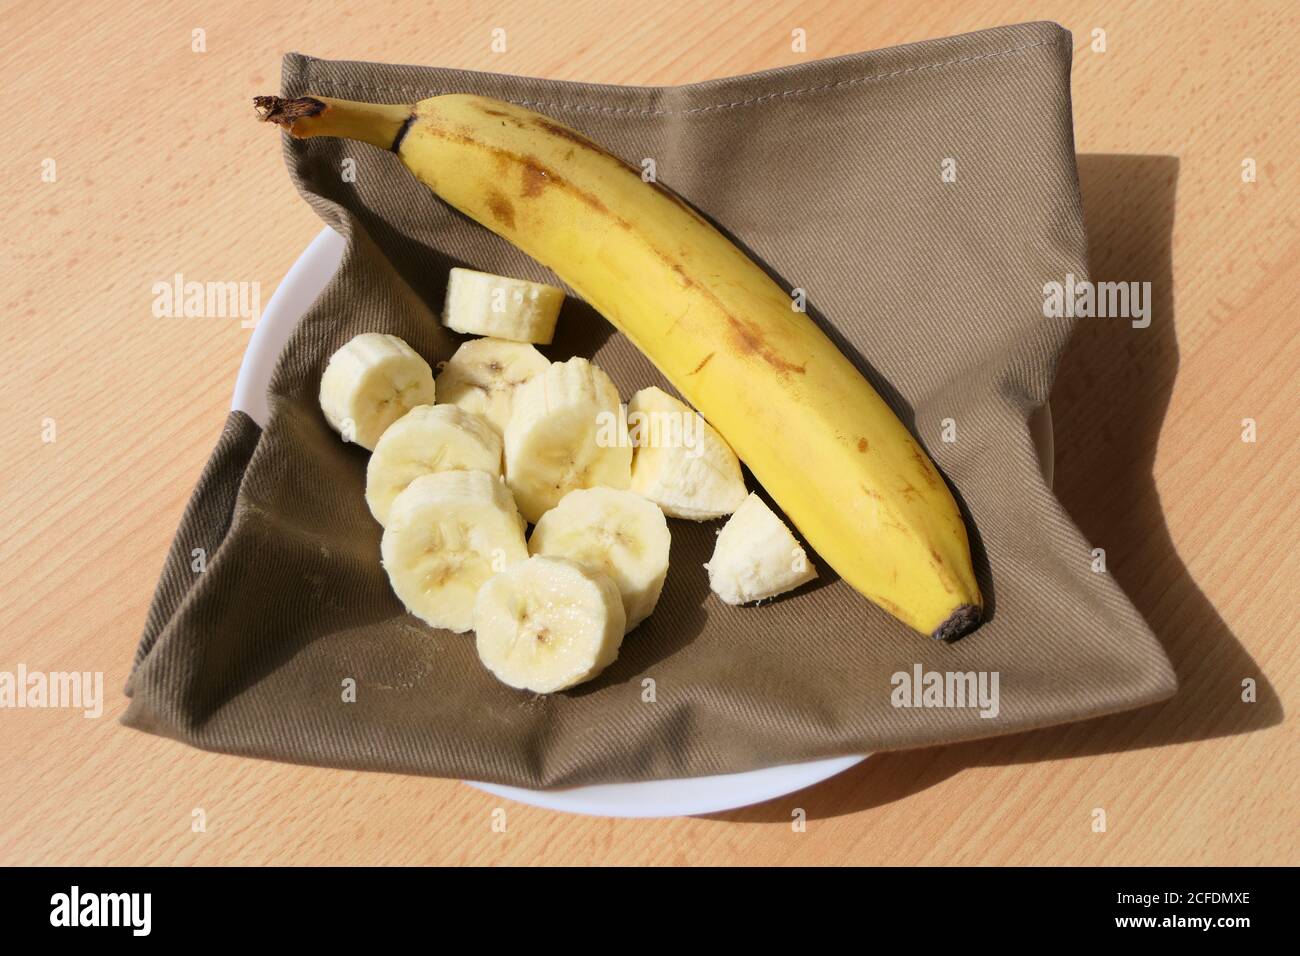 Banane in Scheiben serviert, fertig zum Essen mit Serviette Stockfoto